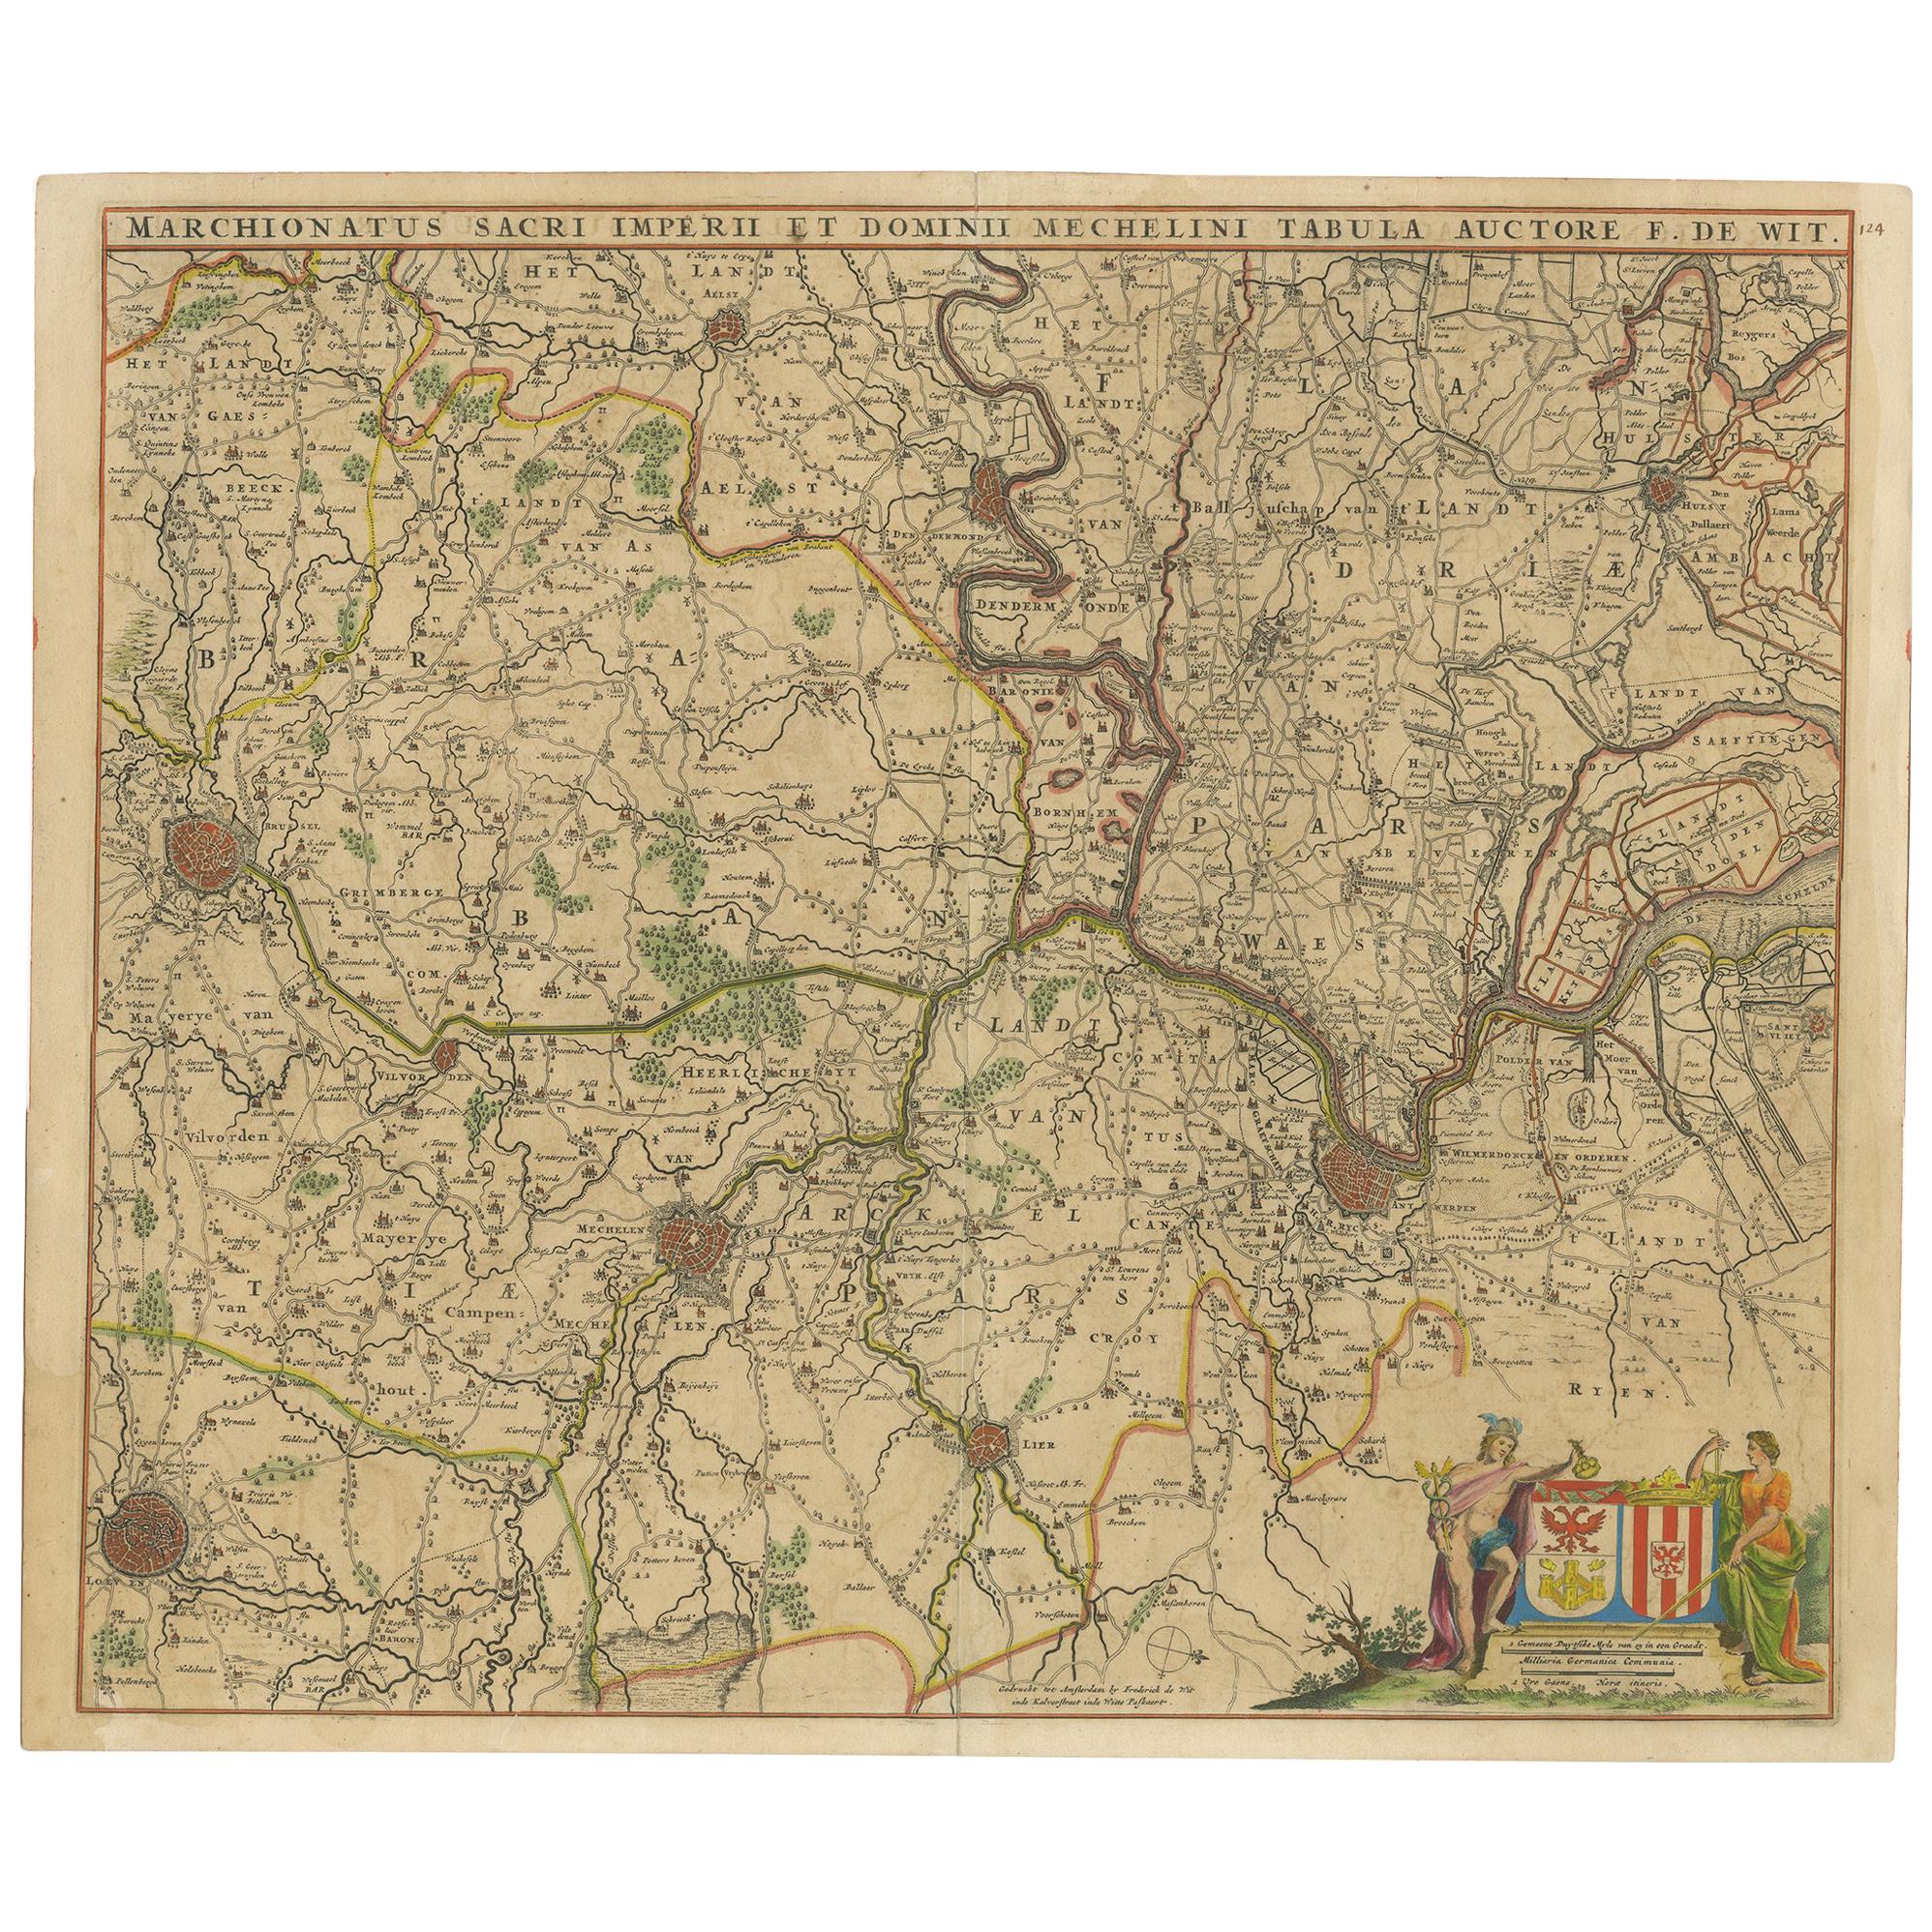 Carte ancienne d'une partie des Flandres en Belgique par F. de Wit, datant d'environ 1680